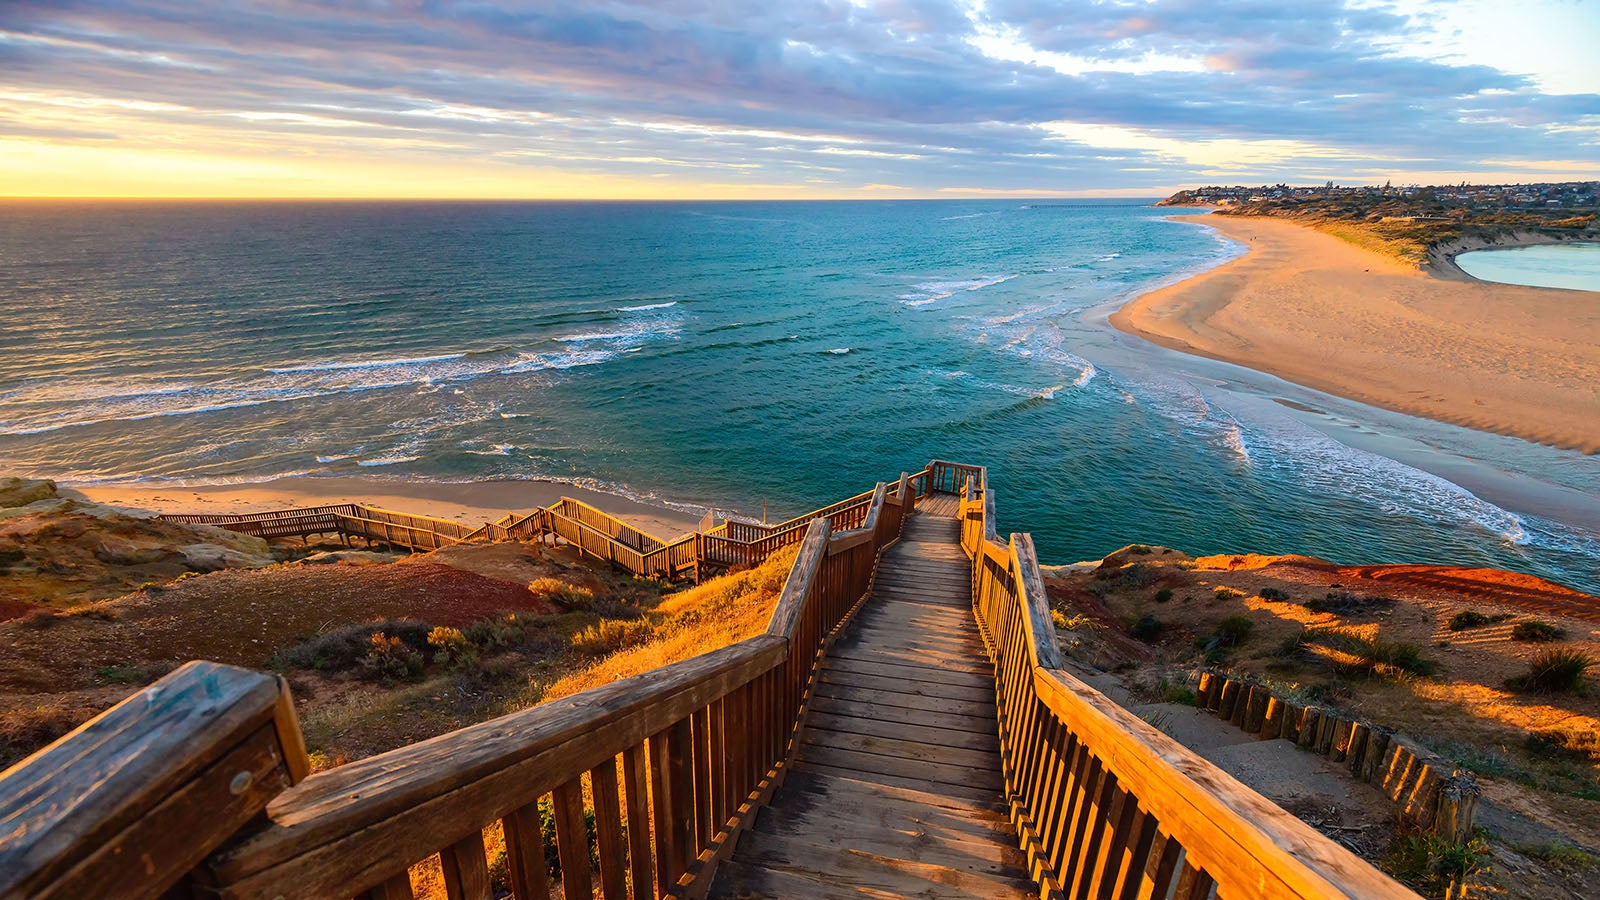 Steps down to an Ocean beach